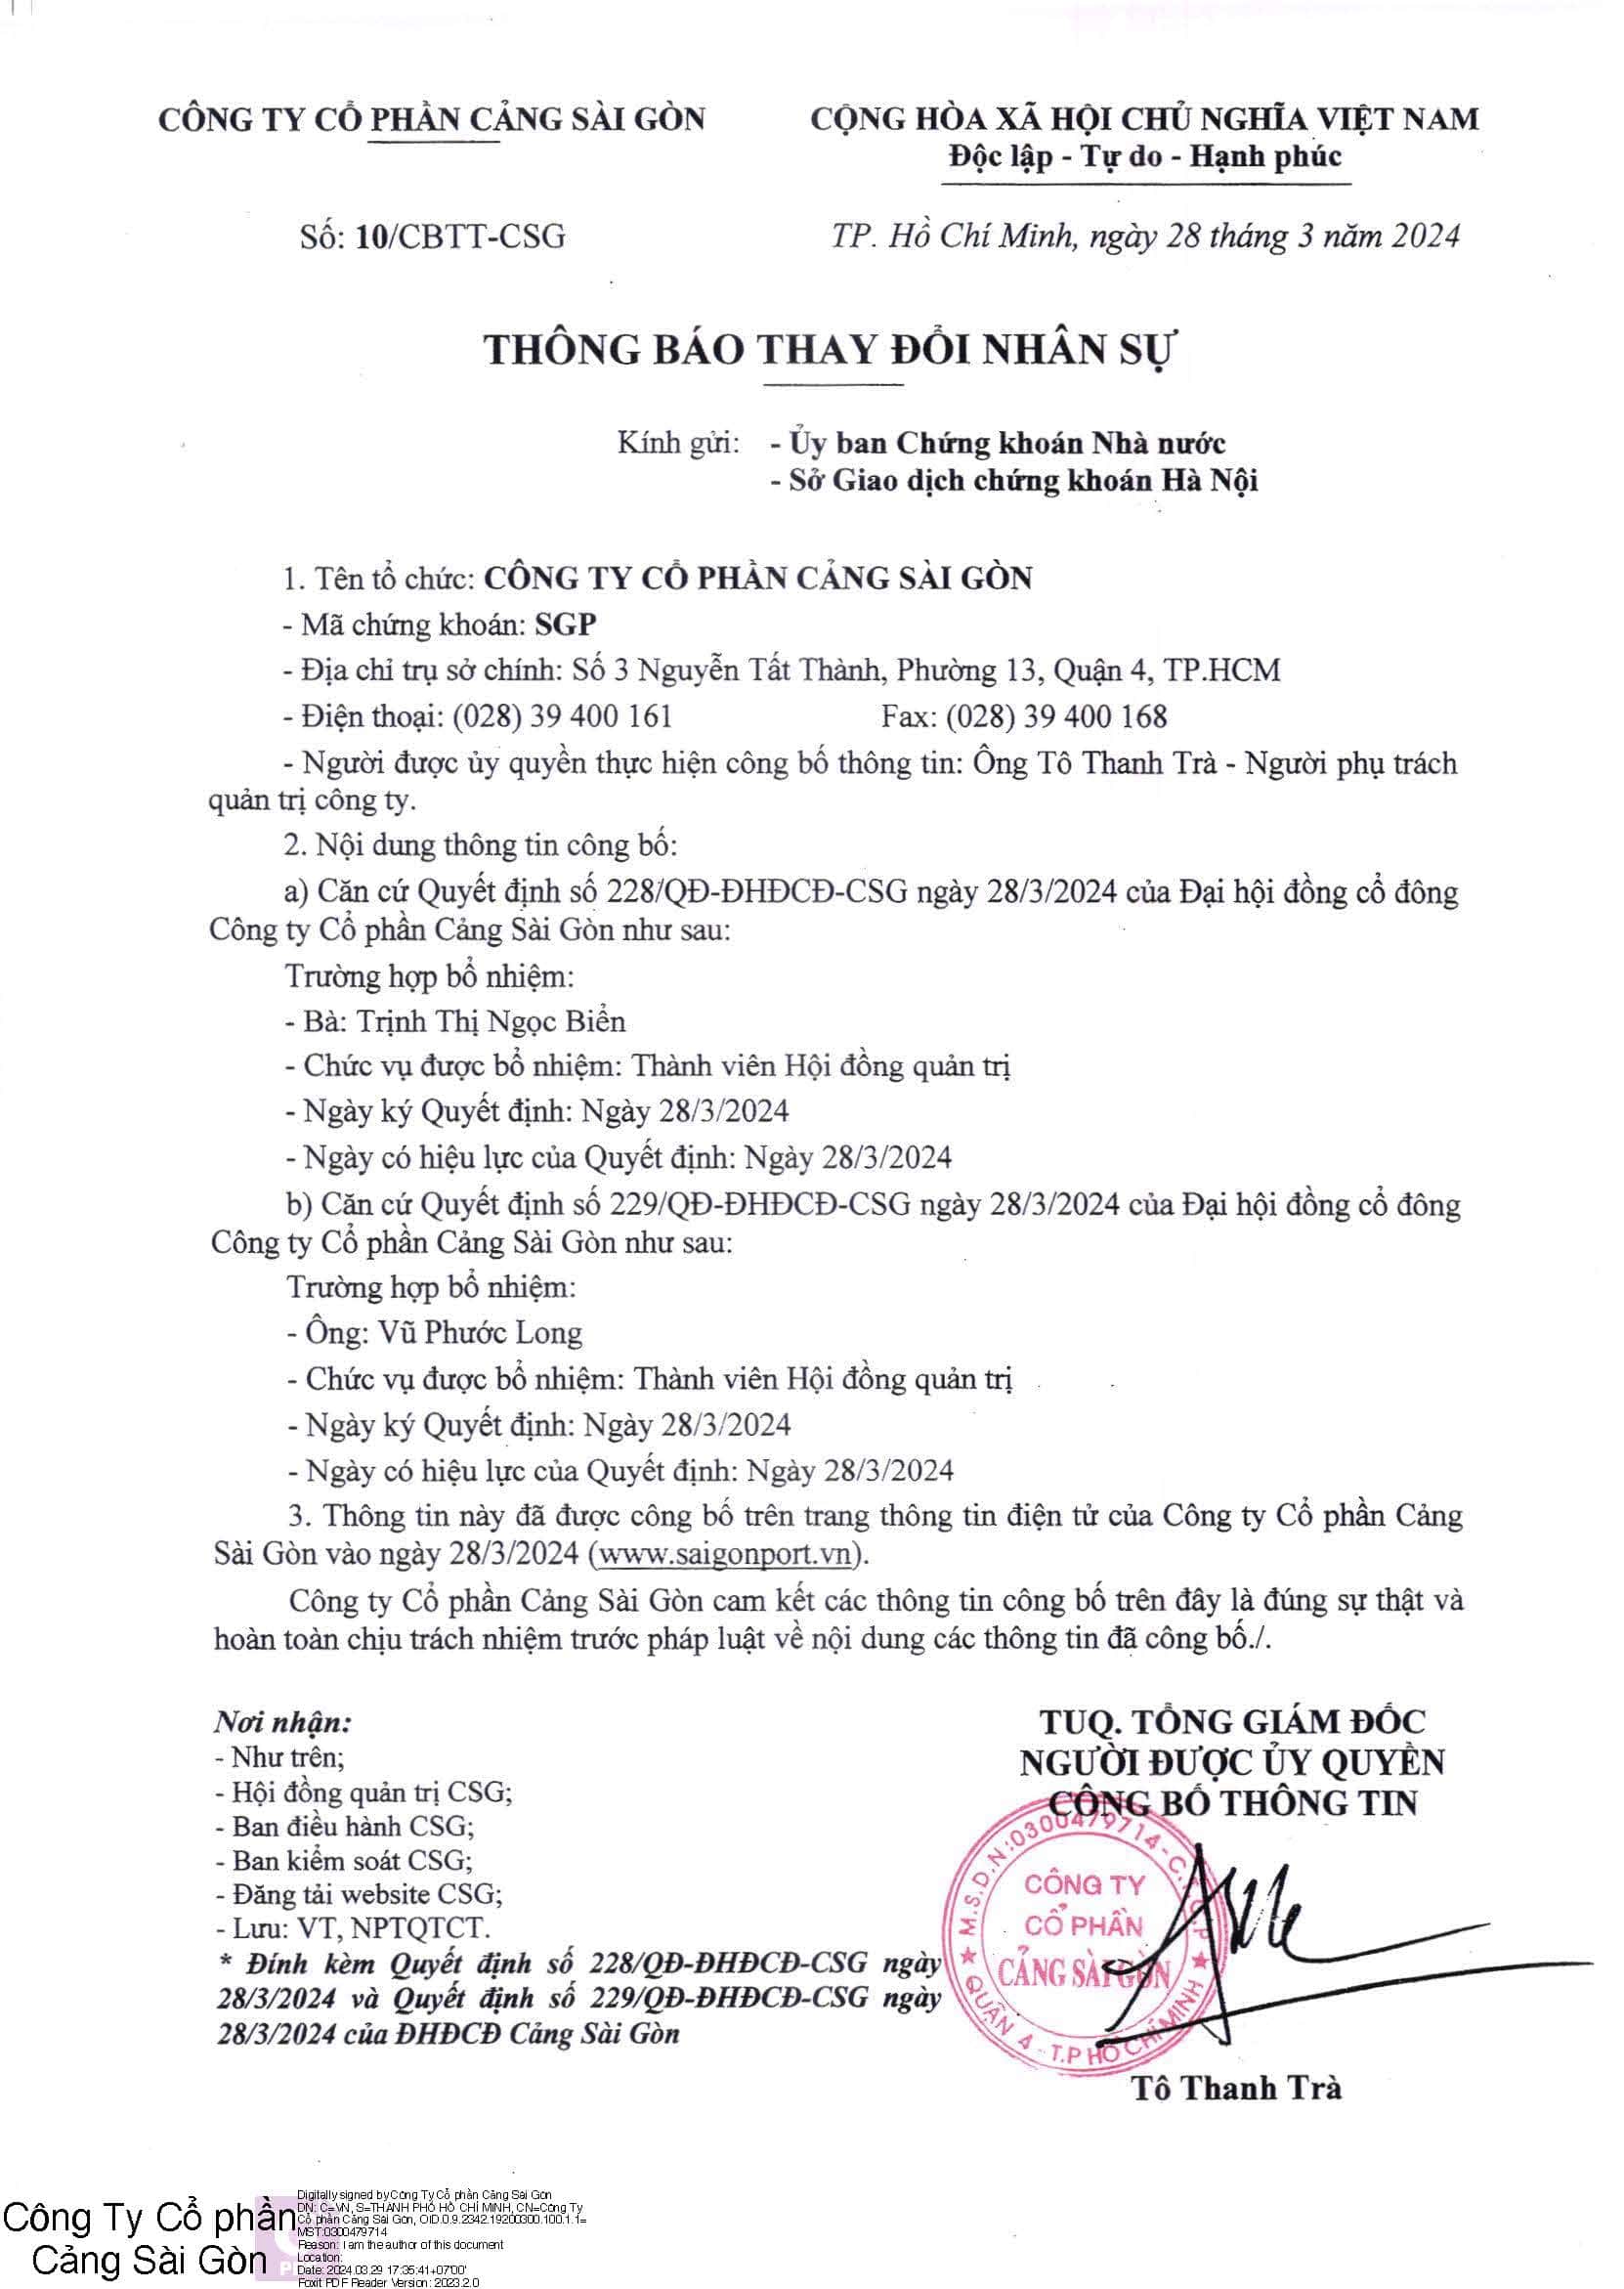 Thông báo số 10/CBTT-CSG về việc thay đổi nhân sự Công ty Cổ phần Cảng Sài Gòn 2024